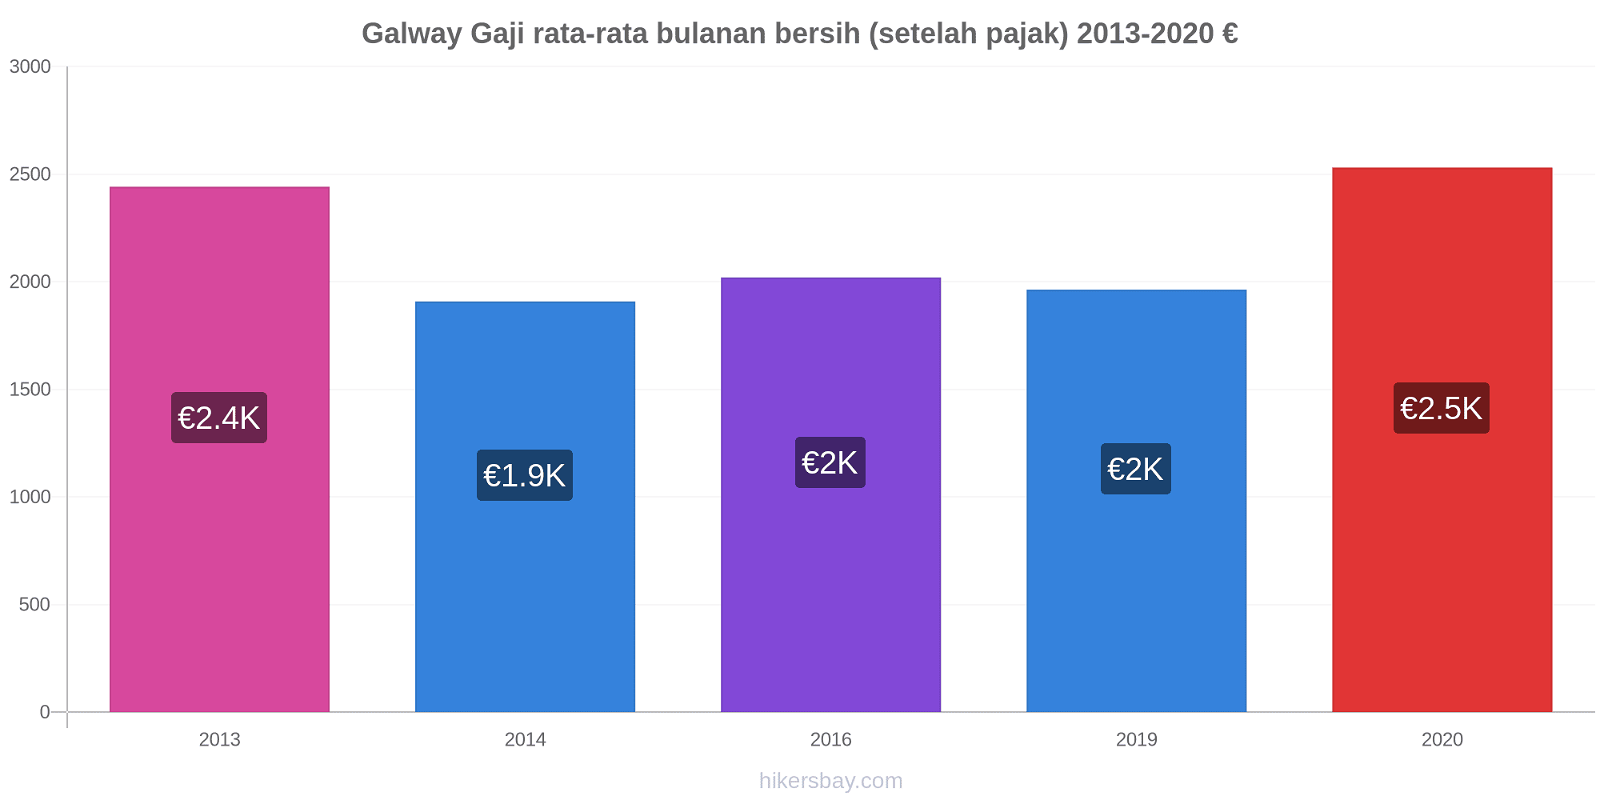 Galway perubahan harga Gaji rata-rata bulanan bersih (setelah pajak) hikersbay.com